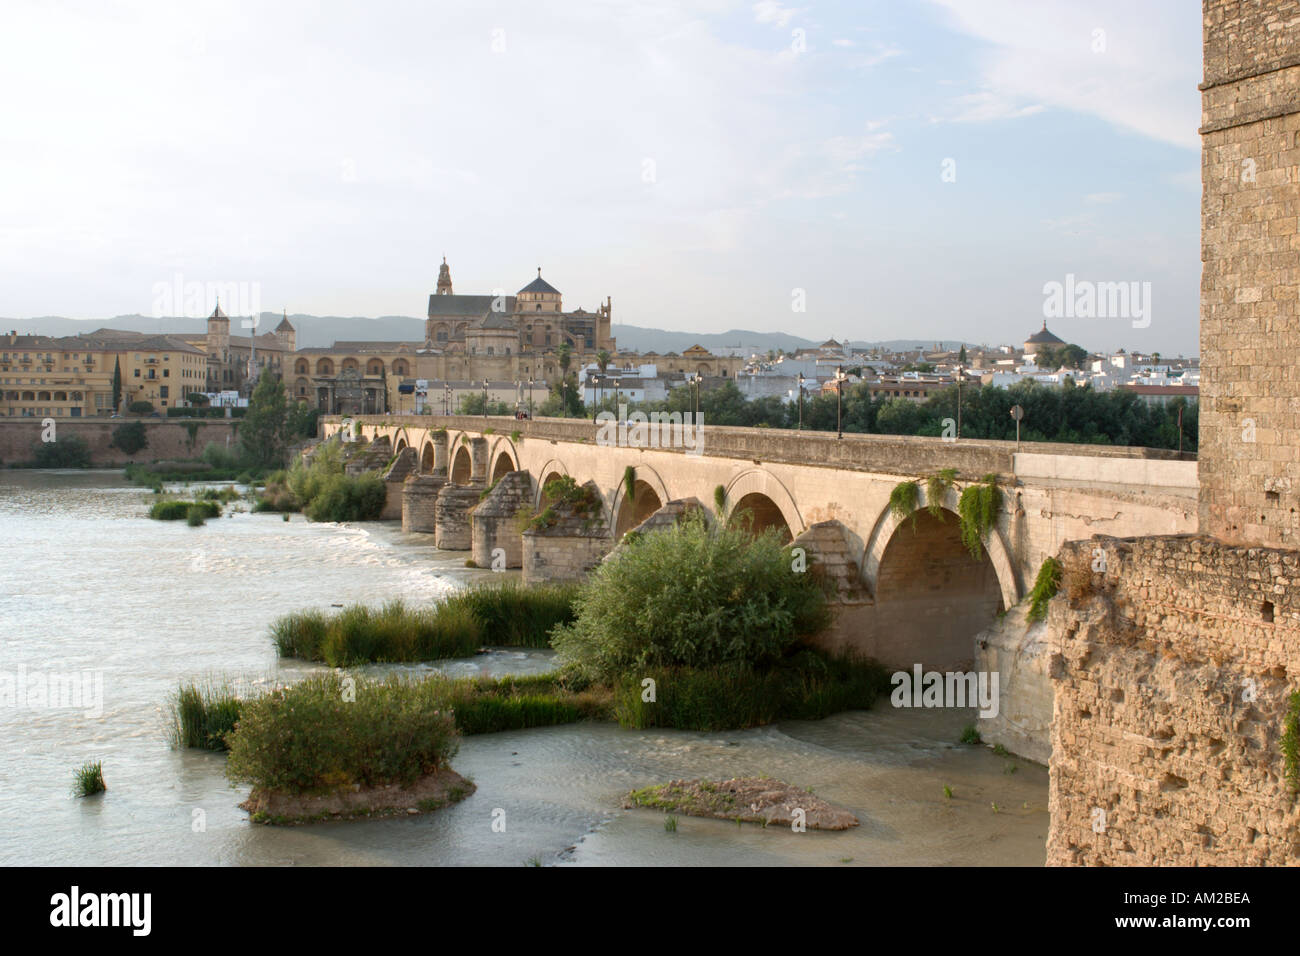 Puente Romano von der Torre De La Calahorra auf dem Fluss Guadalquivir mit der Dom-Moschee in der Ferne, Cordoba, Spanien Stockfoto